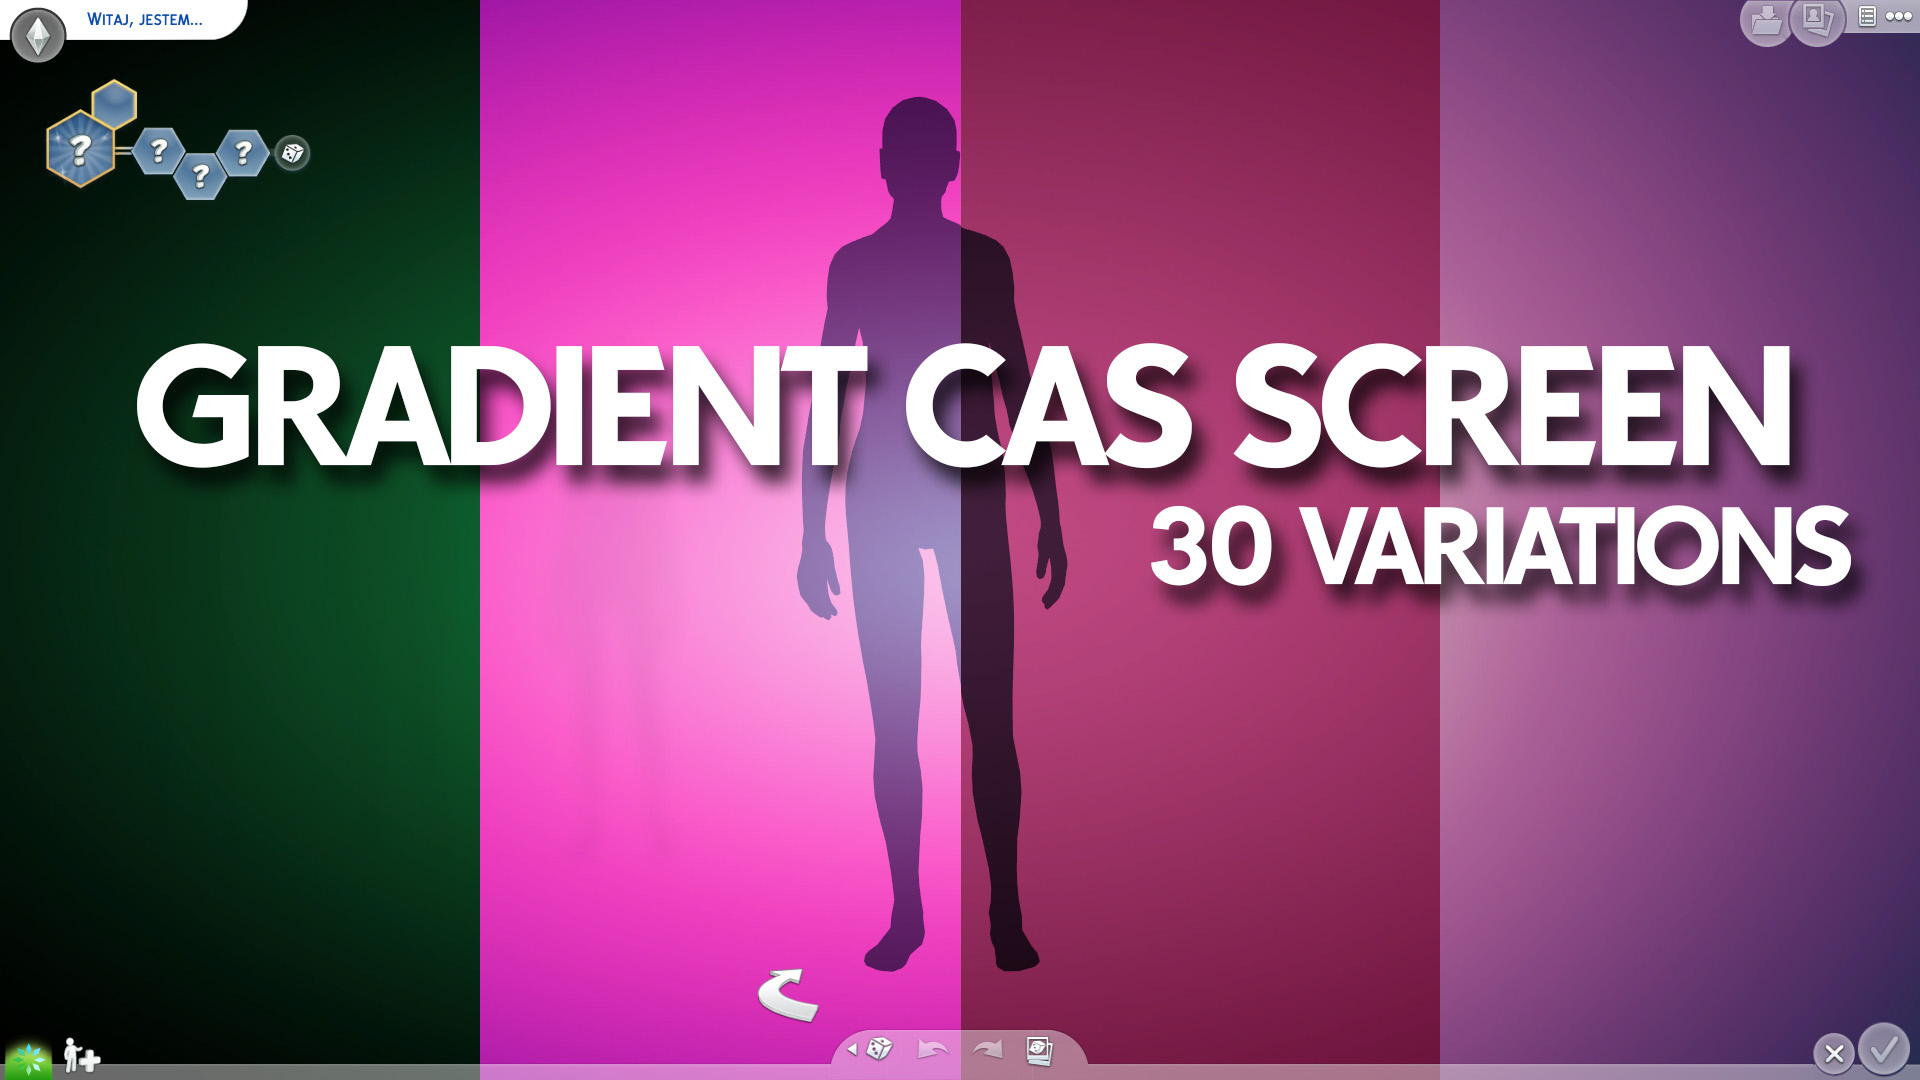 Các bạn yêu thích game Sims nhất định phải xem hình nền Gradient CAS Screen đầy sáng tạo này. Tông màu gradient tràn đầy cảm xúc sẽ đem lại cho bạn một không gian ảo hoàn hảo cho trò chơi của mình.